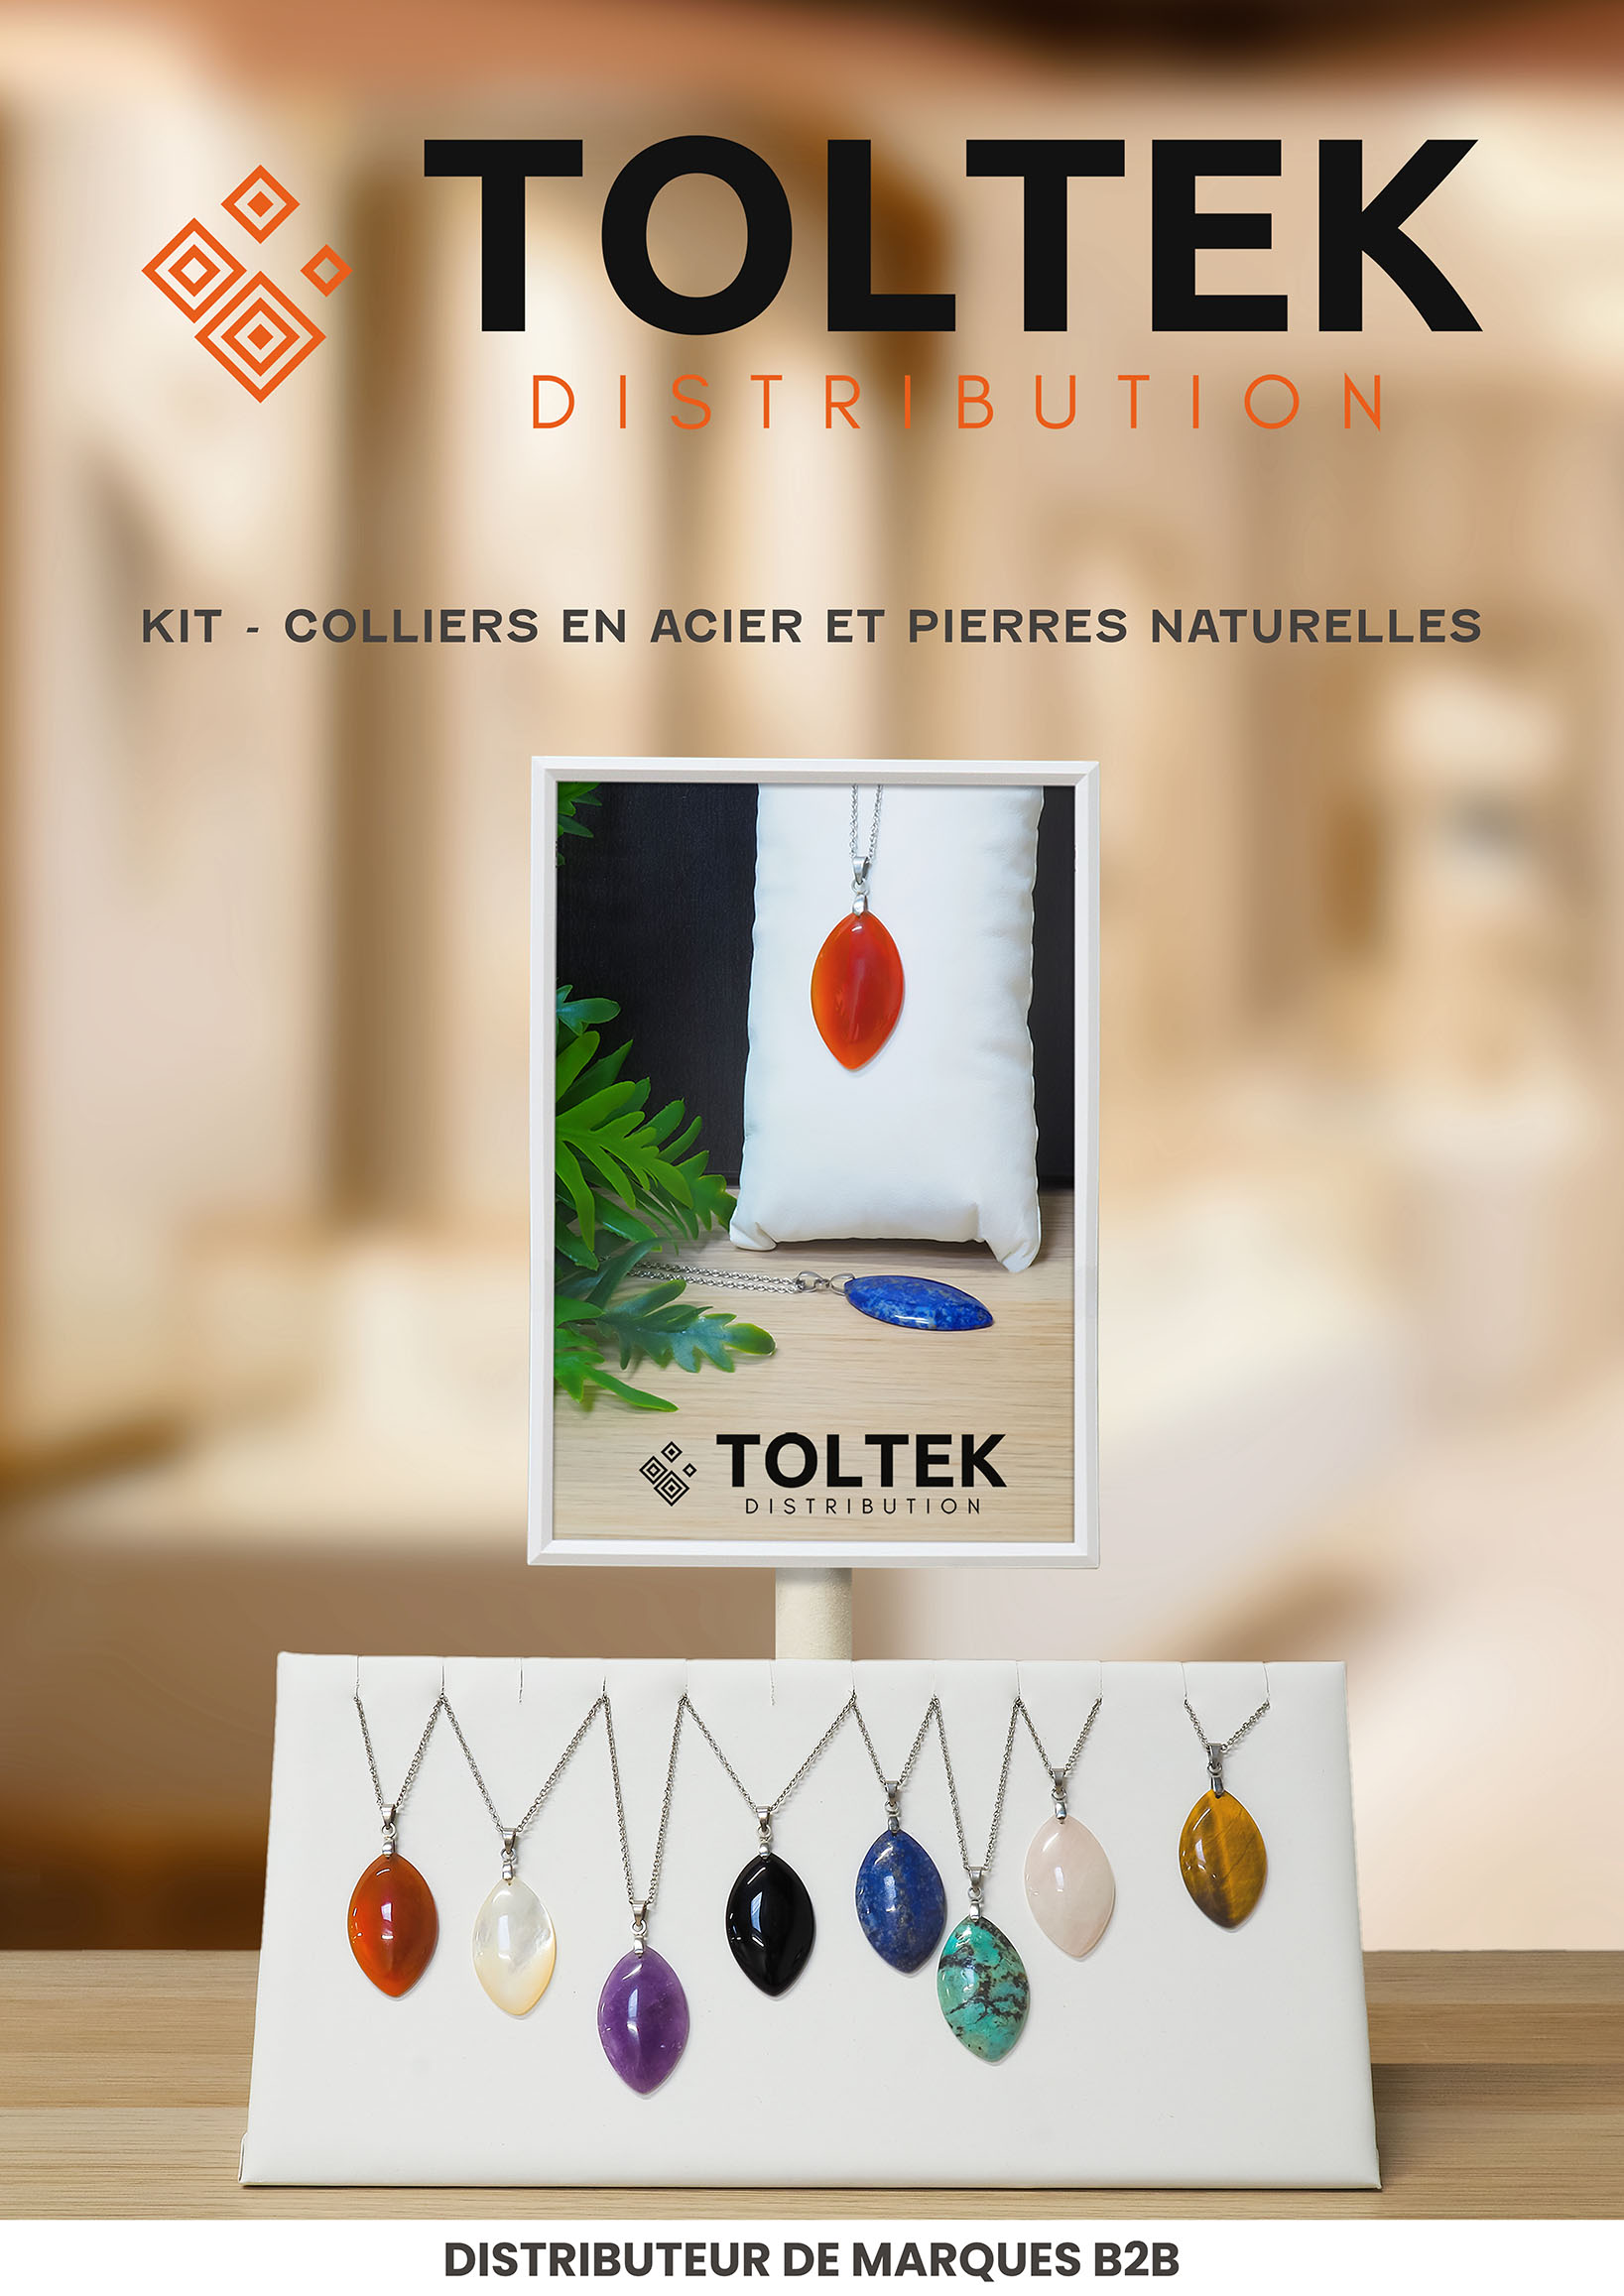 KIT - Colliers en acier et pierres naturelles Toltek